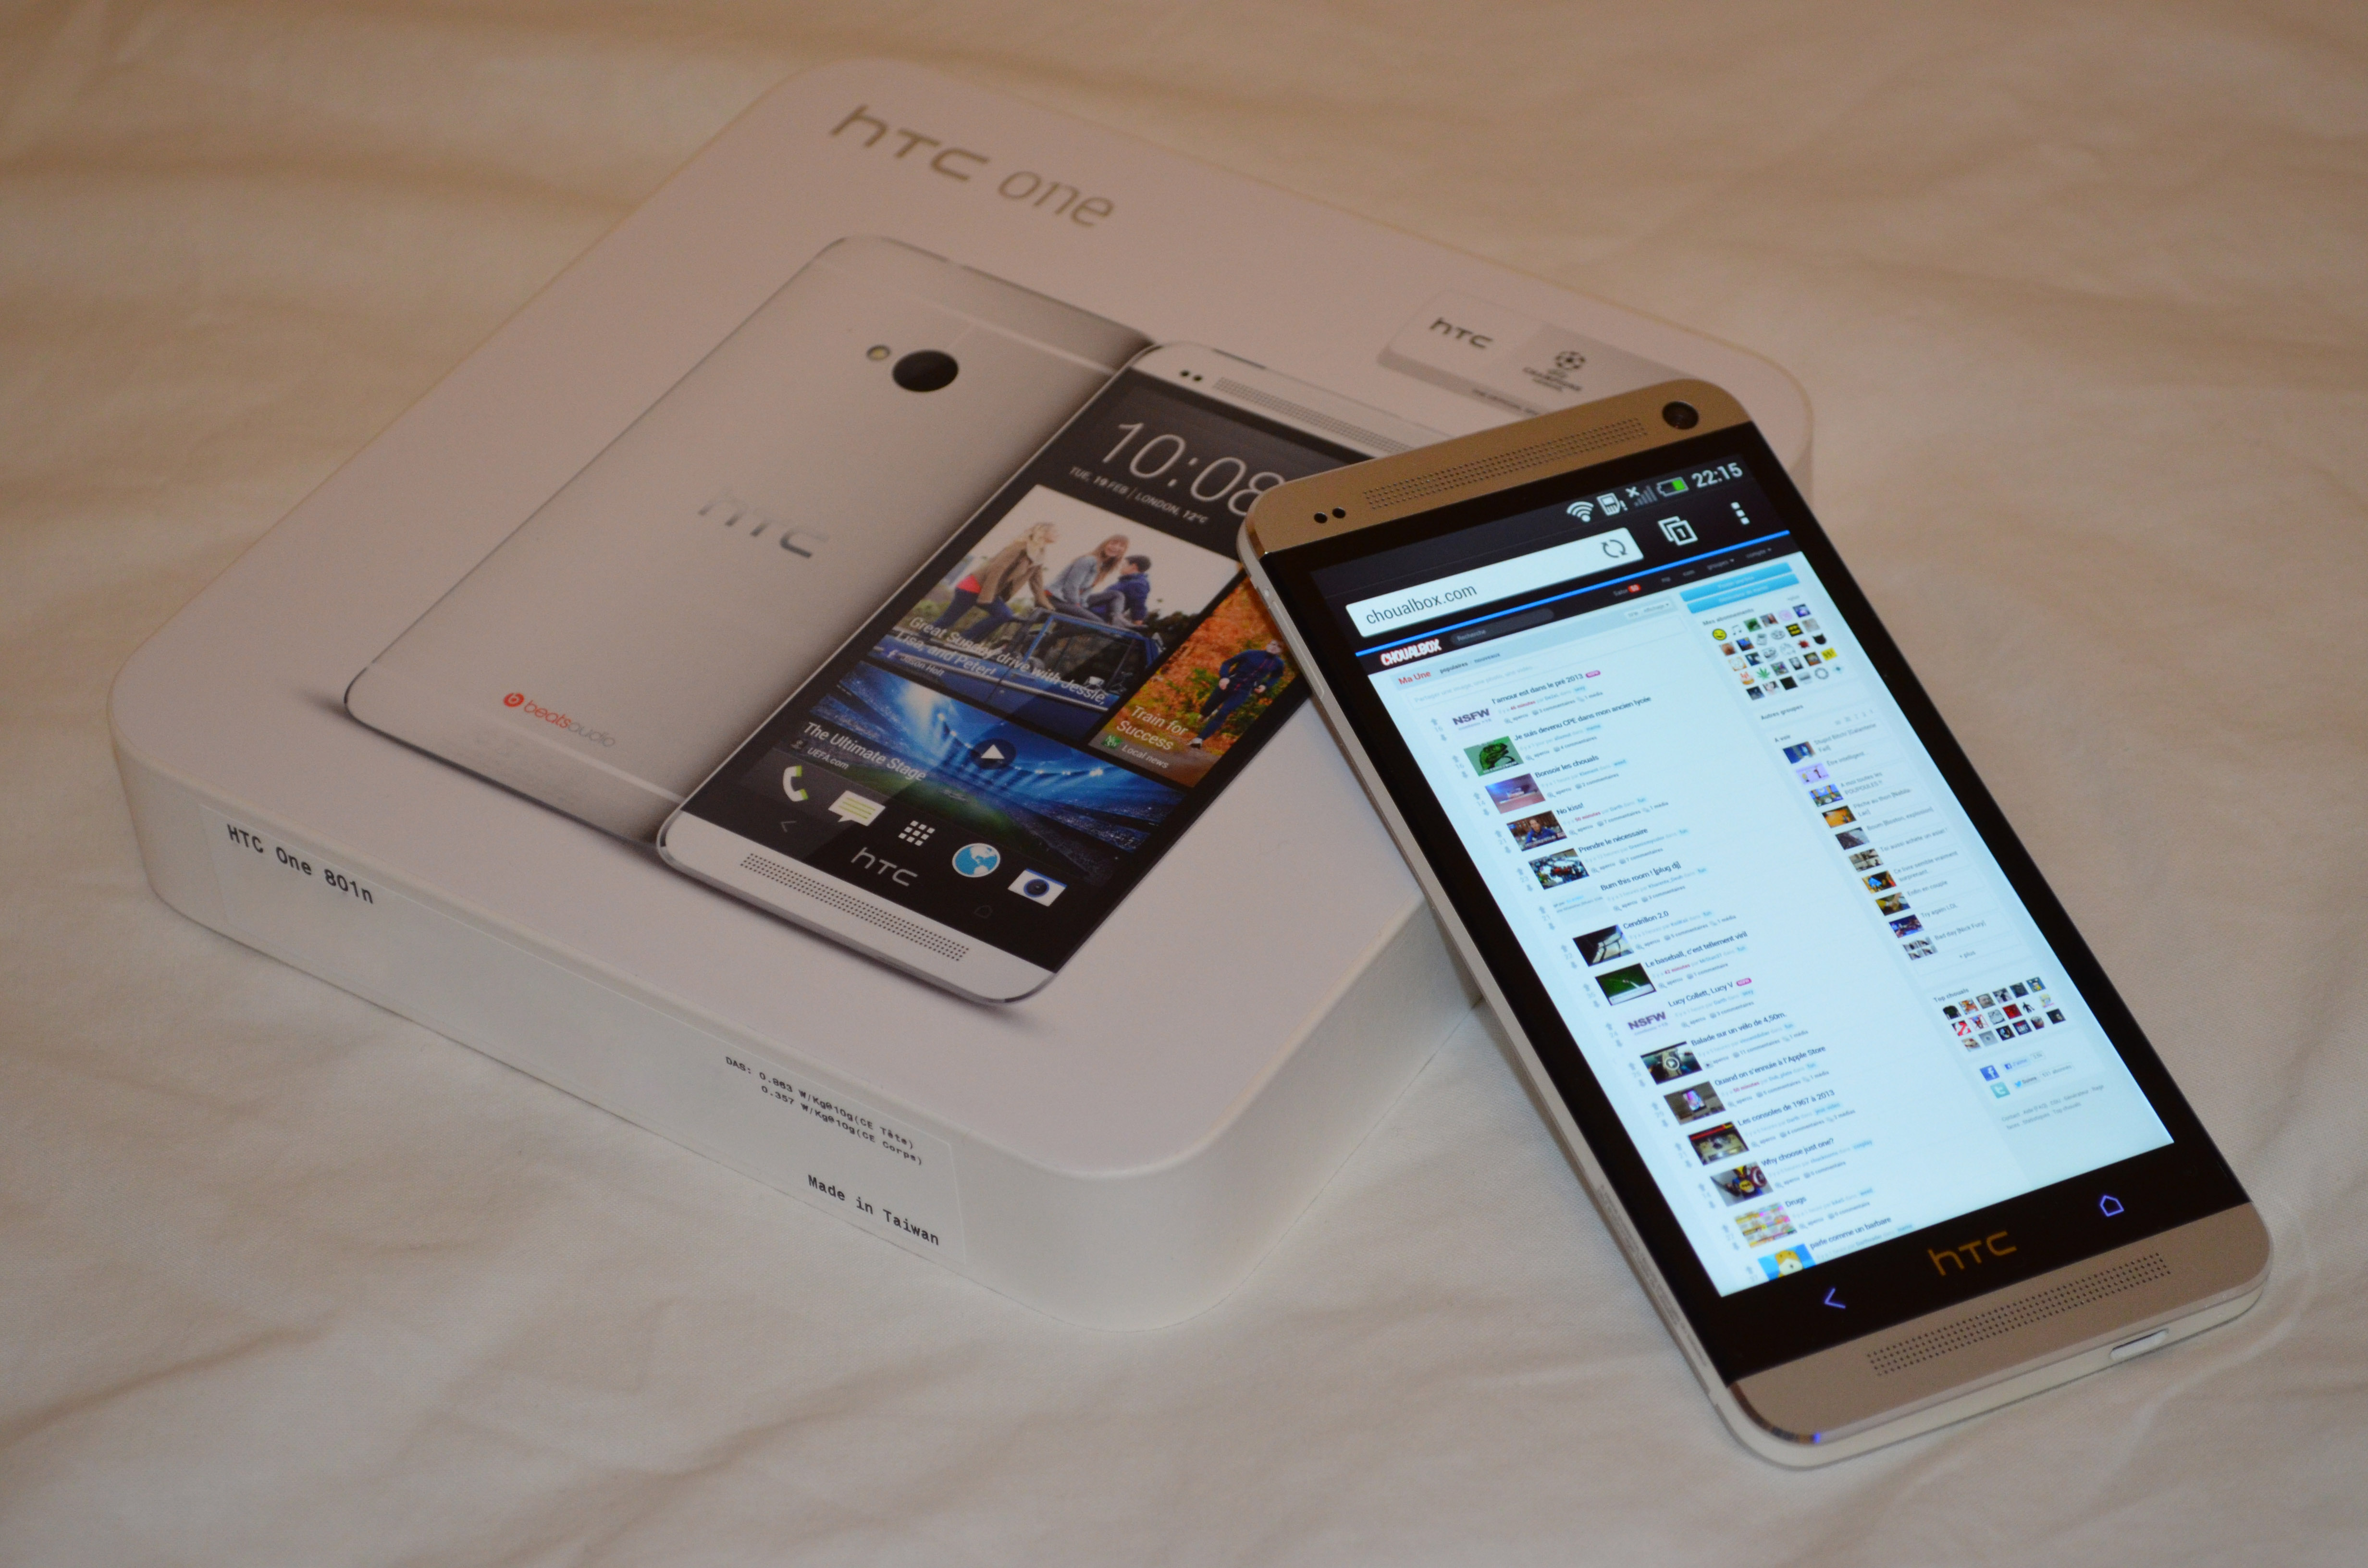 Des heureux possesseurs d\'HTC One ?